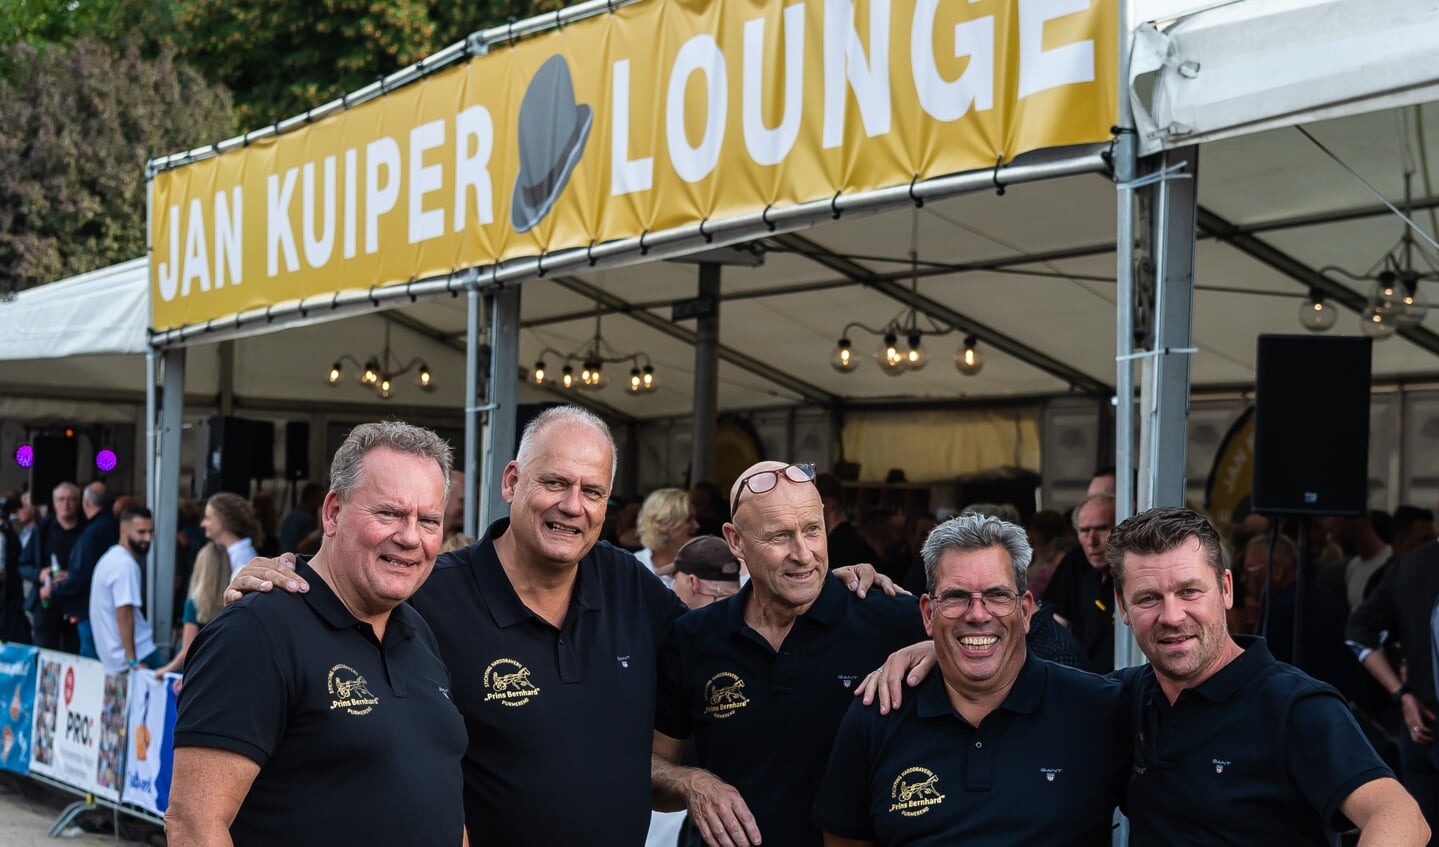 Robert en Marco Kuiper, Gertjan Otto, Jan Peter Dompeling en Bas Hillecamp, hier treffend voor de Jan Kuiper Lounge, kijken tevreden terug op de organisatie van hun eerste gezamenlijke kortebaandraverij.